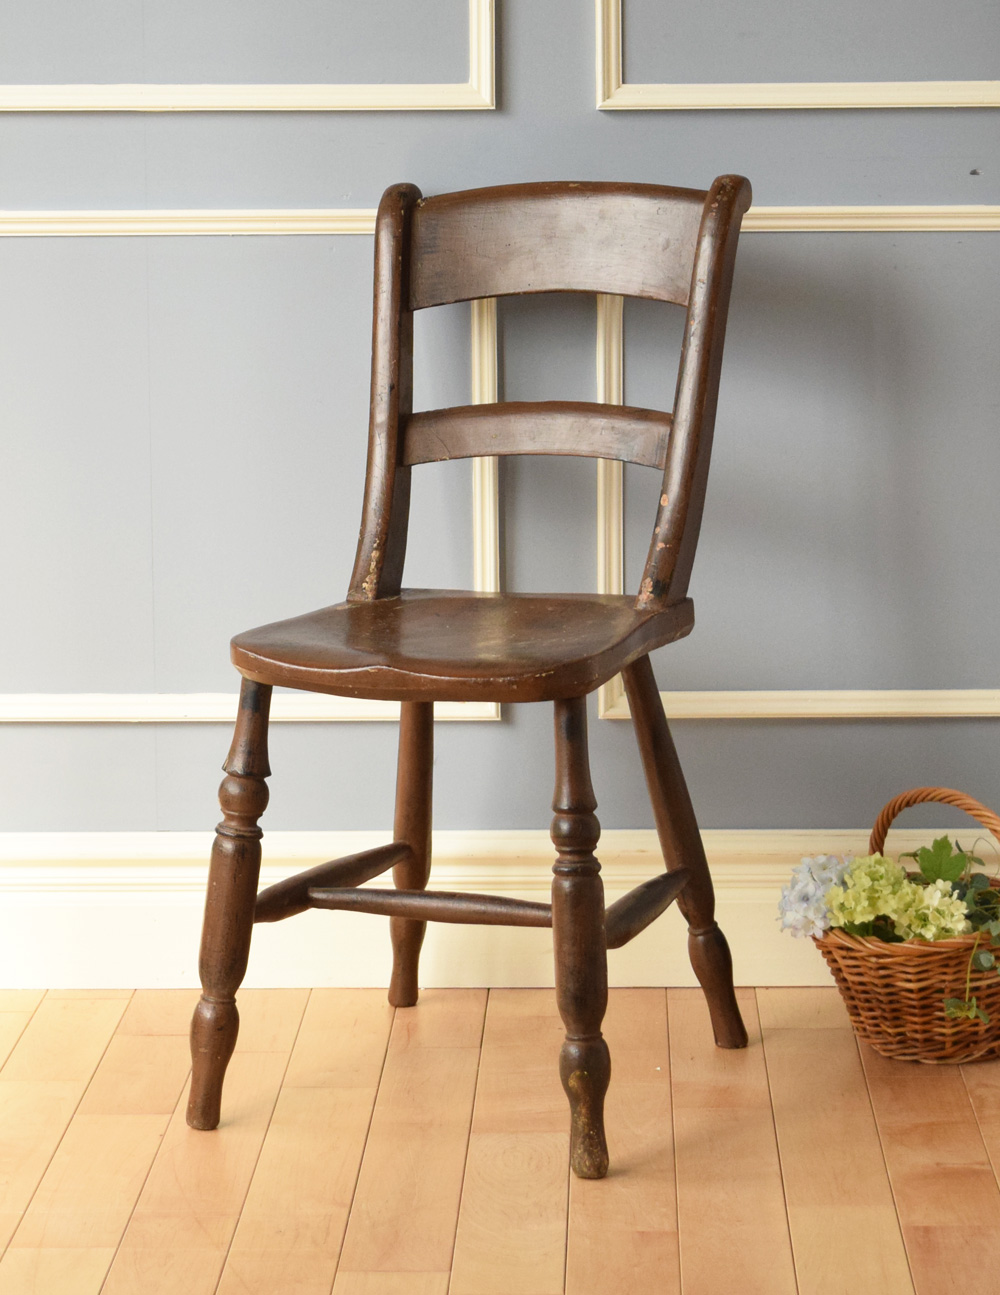 ブラウンカラーのアンティークの椅子、ナチュラルで使いやすいキッチンチェア (m-240-c-2)